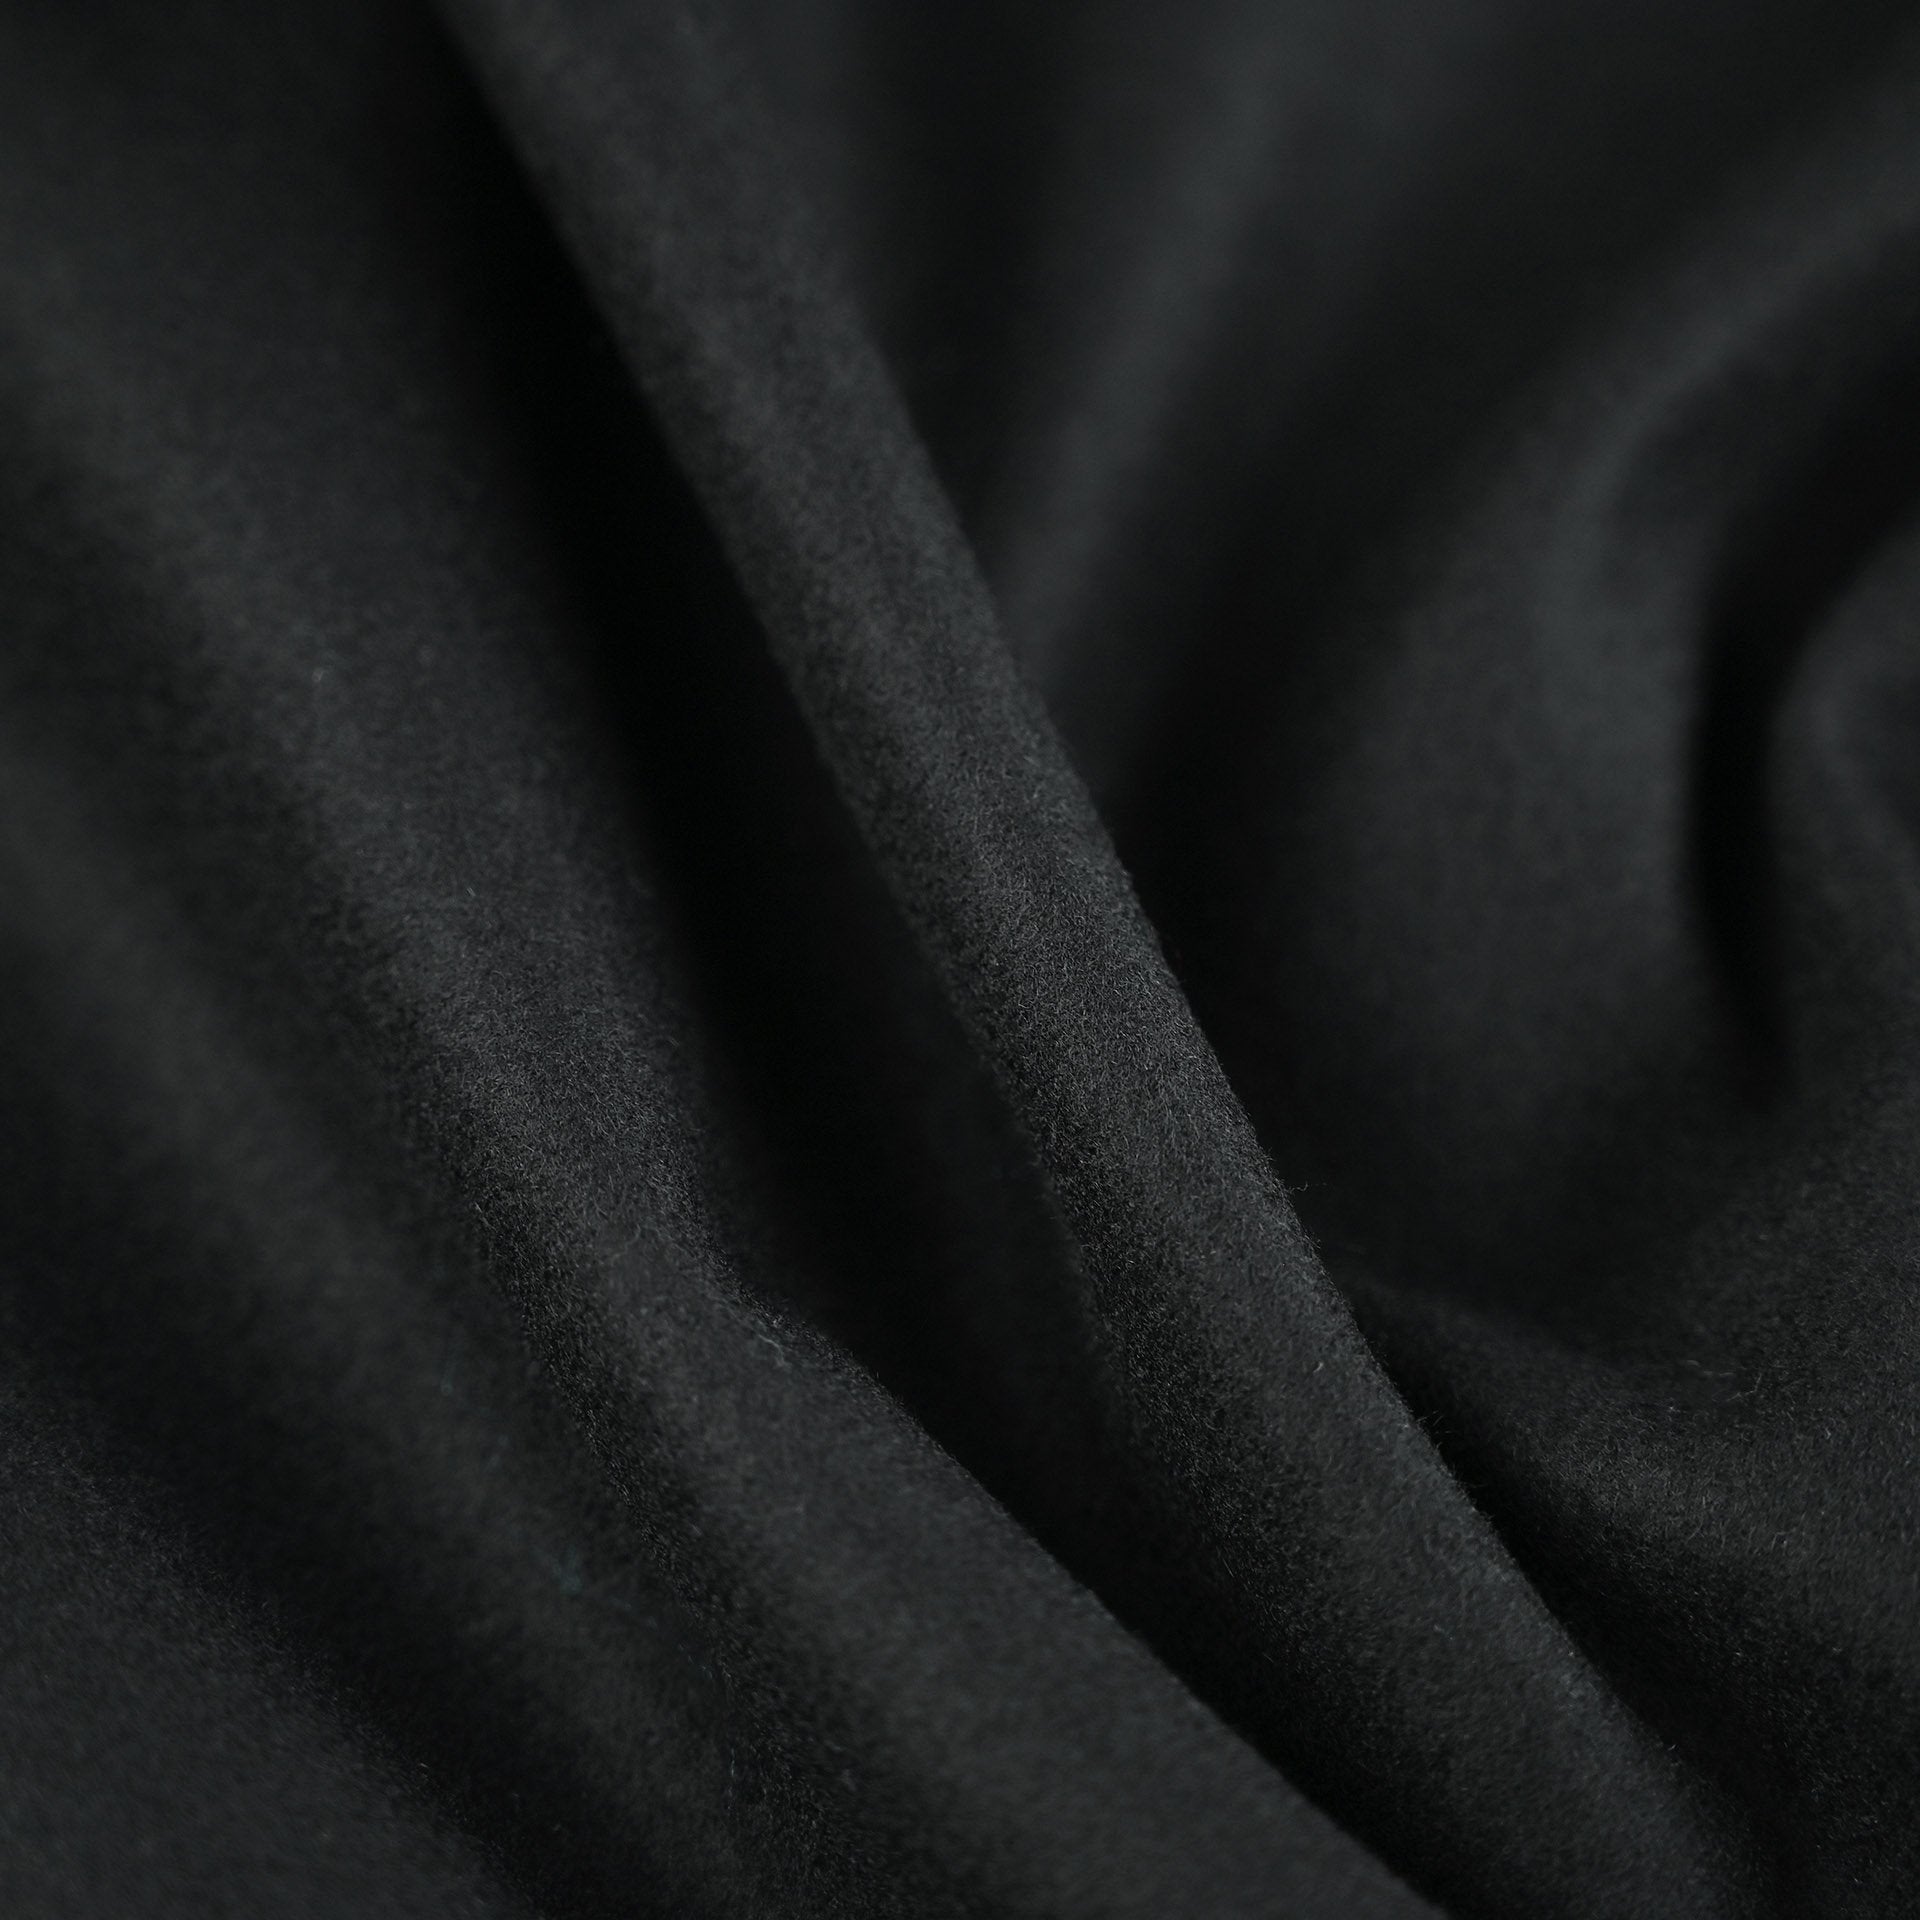 Black Coating Fabric